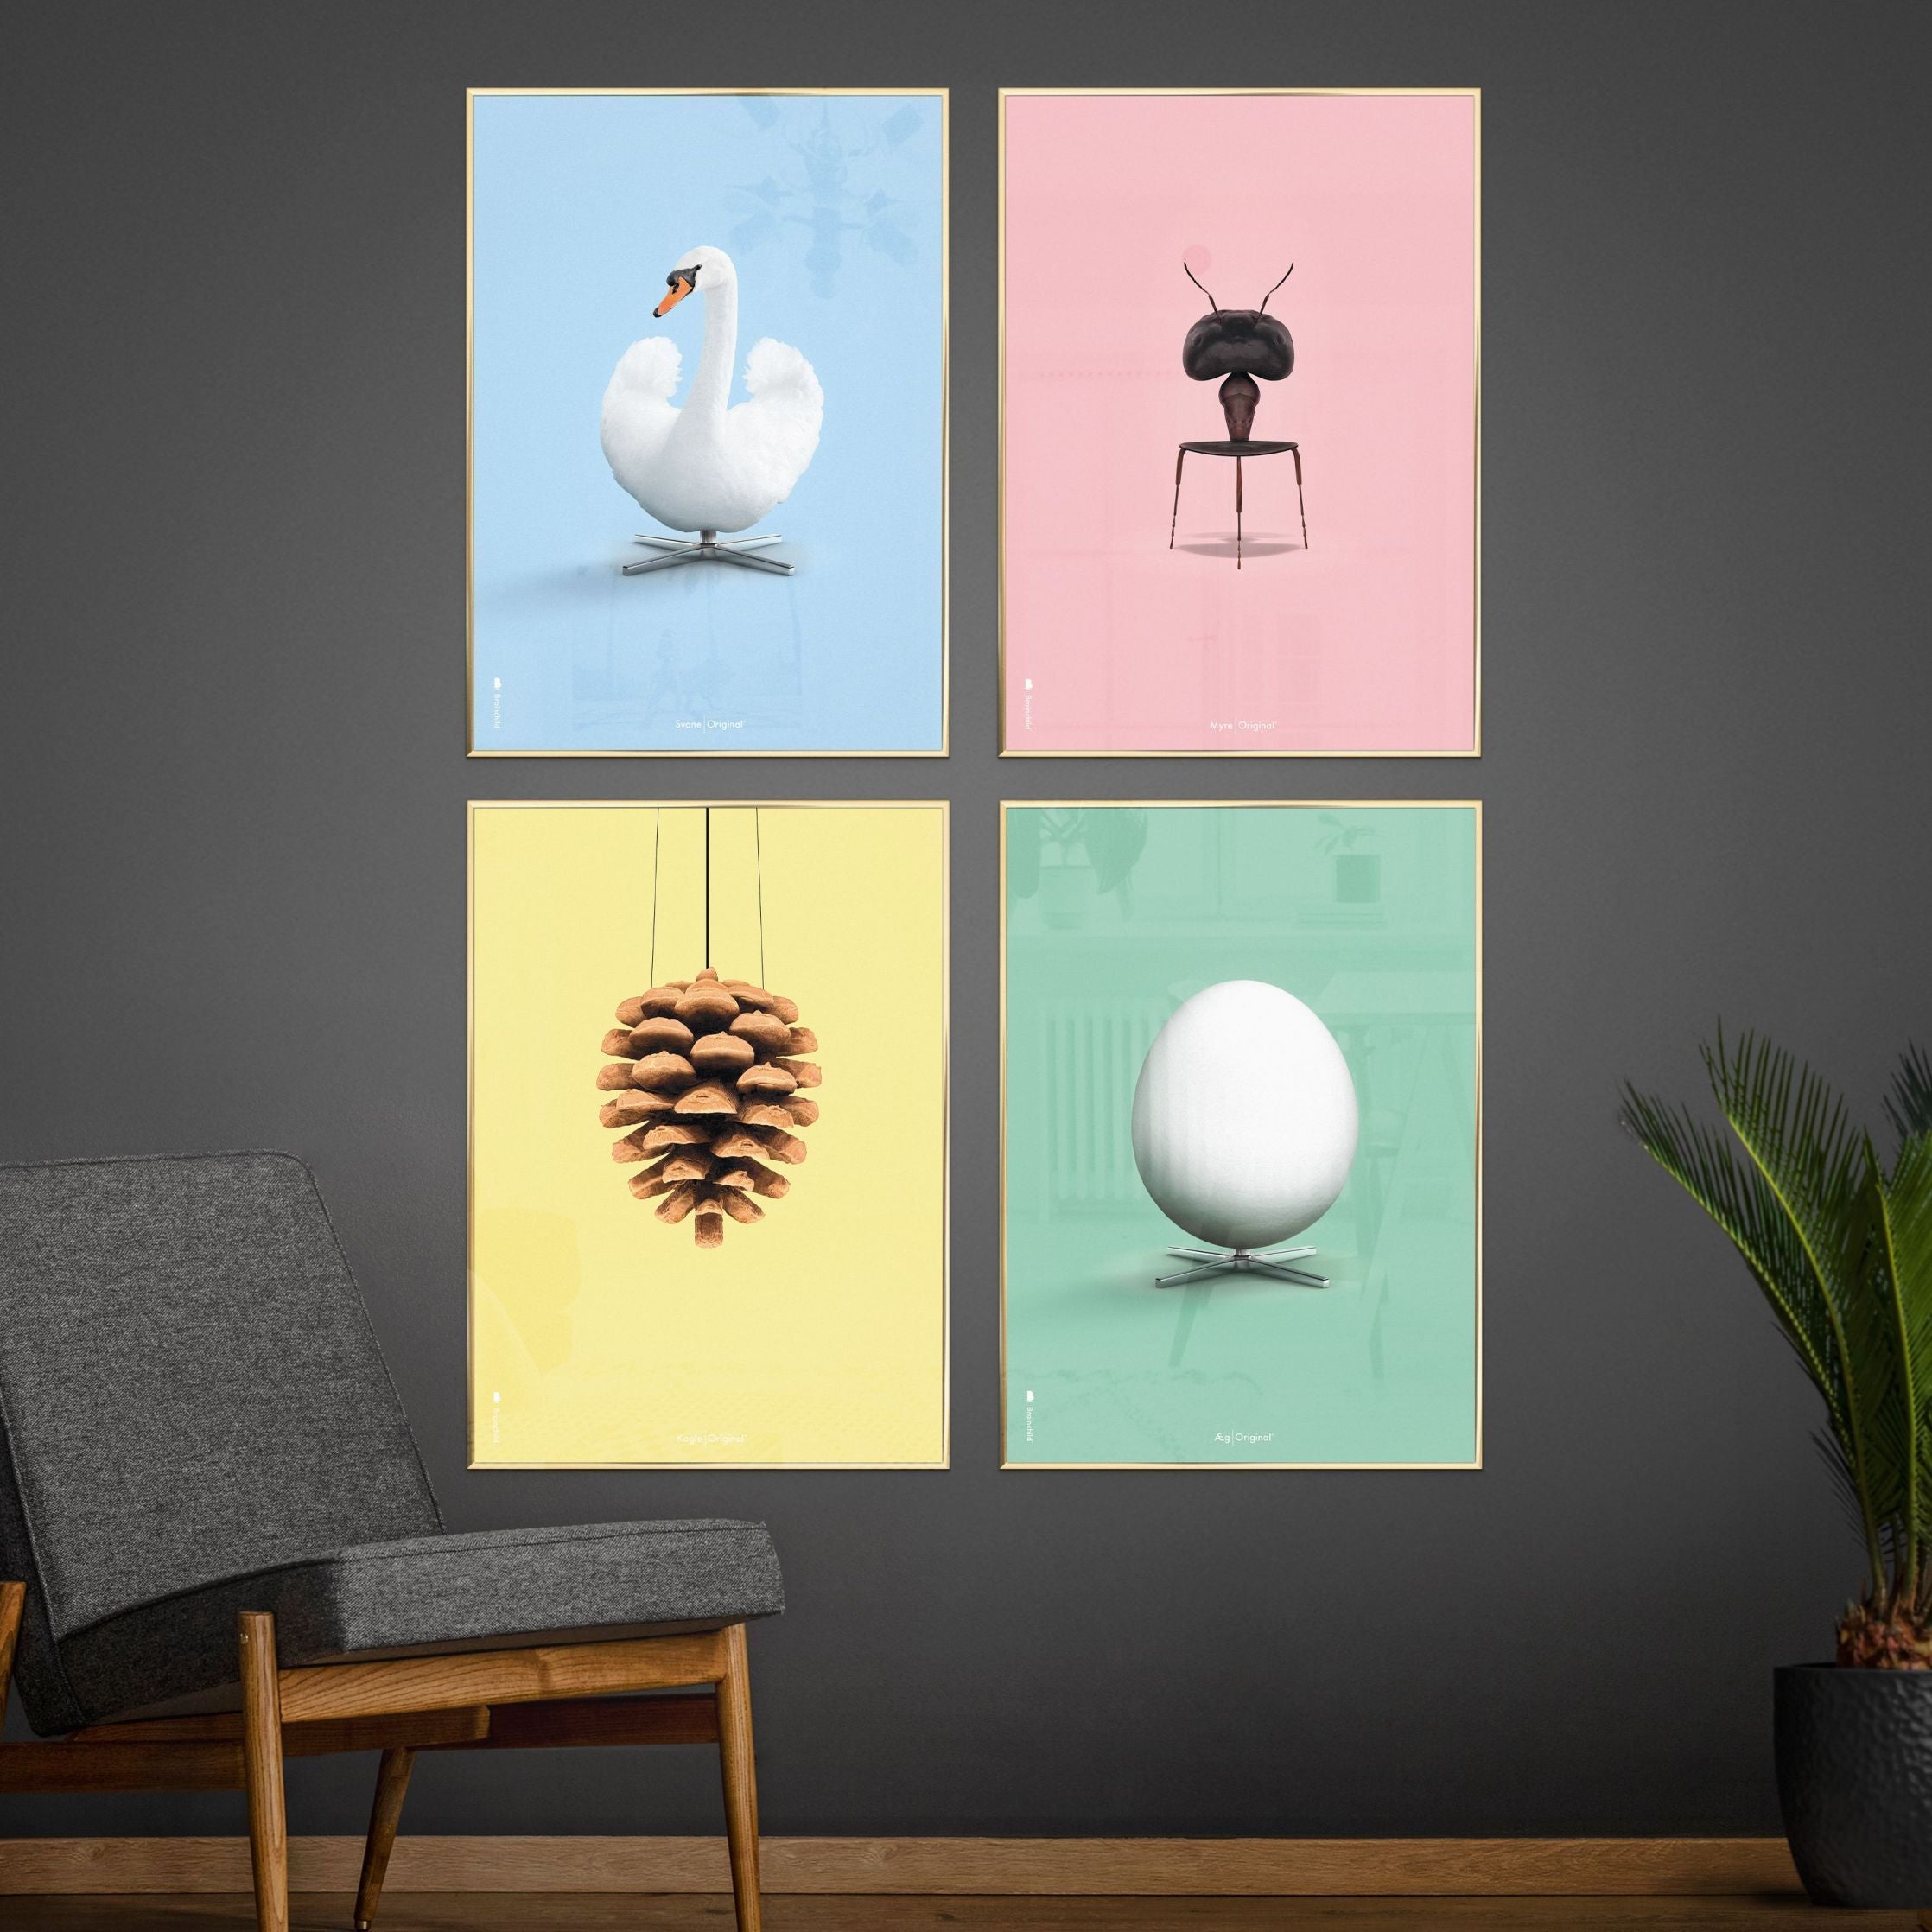 brainchild Swan Classic Poster, koperen frame 50x70 cm, lichtblauwe achtergrond